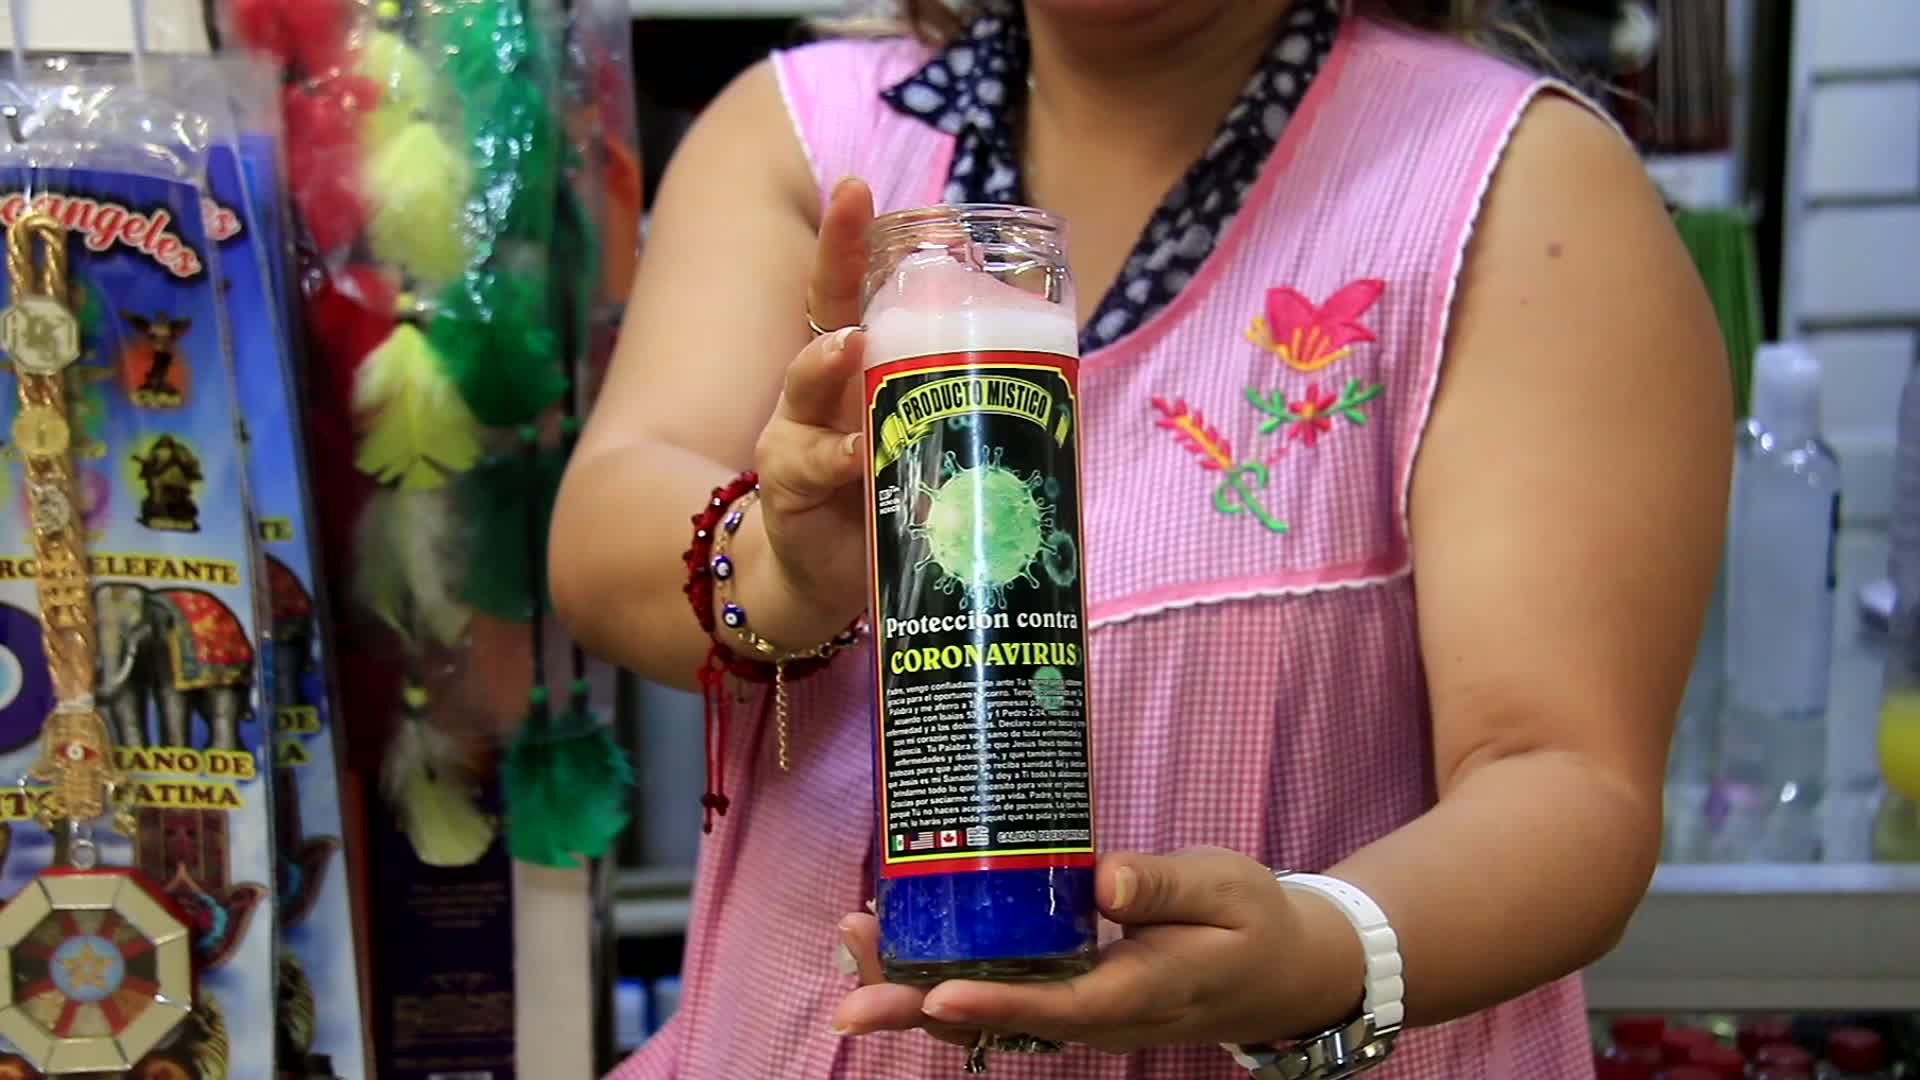 Cambio Tomar conciencia Espinas Veladora contra el coronavirus, el producto "milagro" que se vende en  México - CNN Video